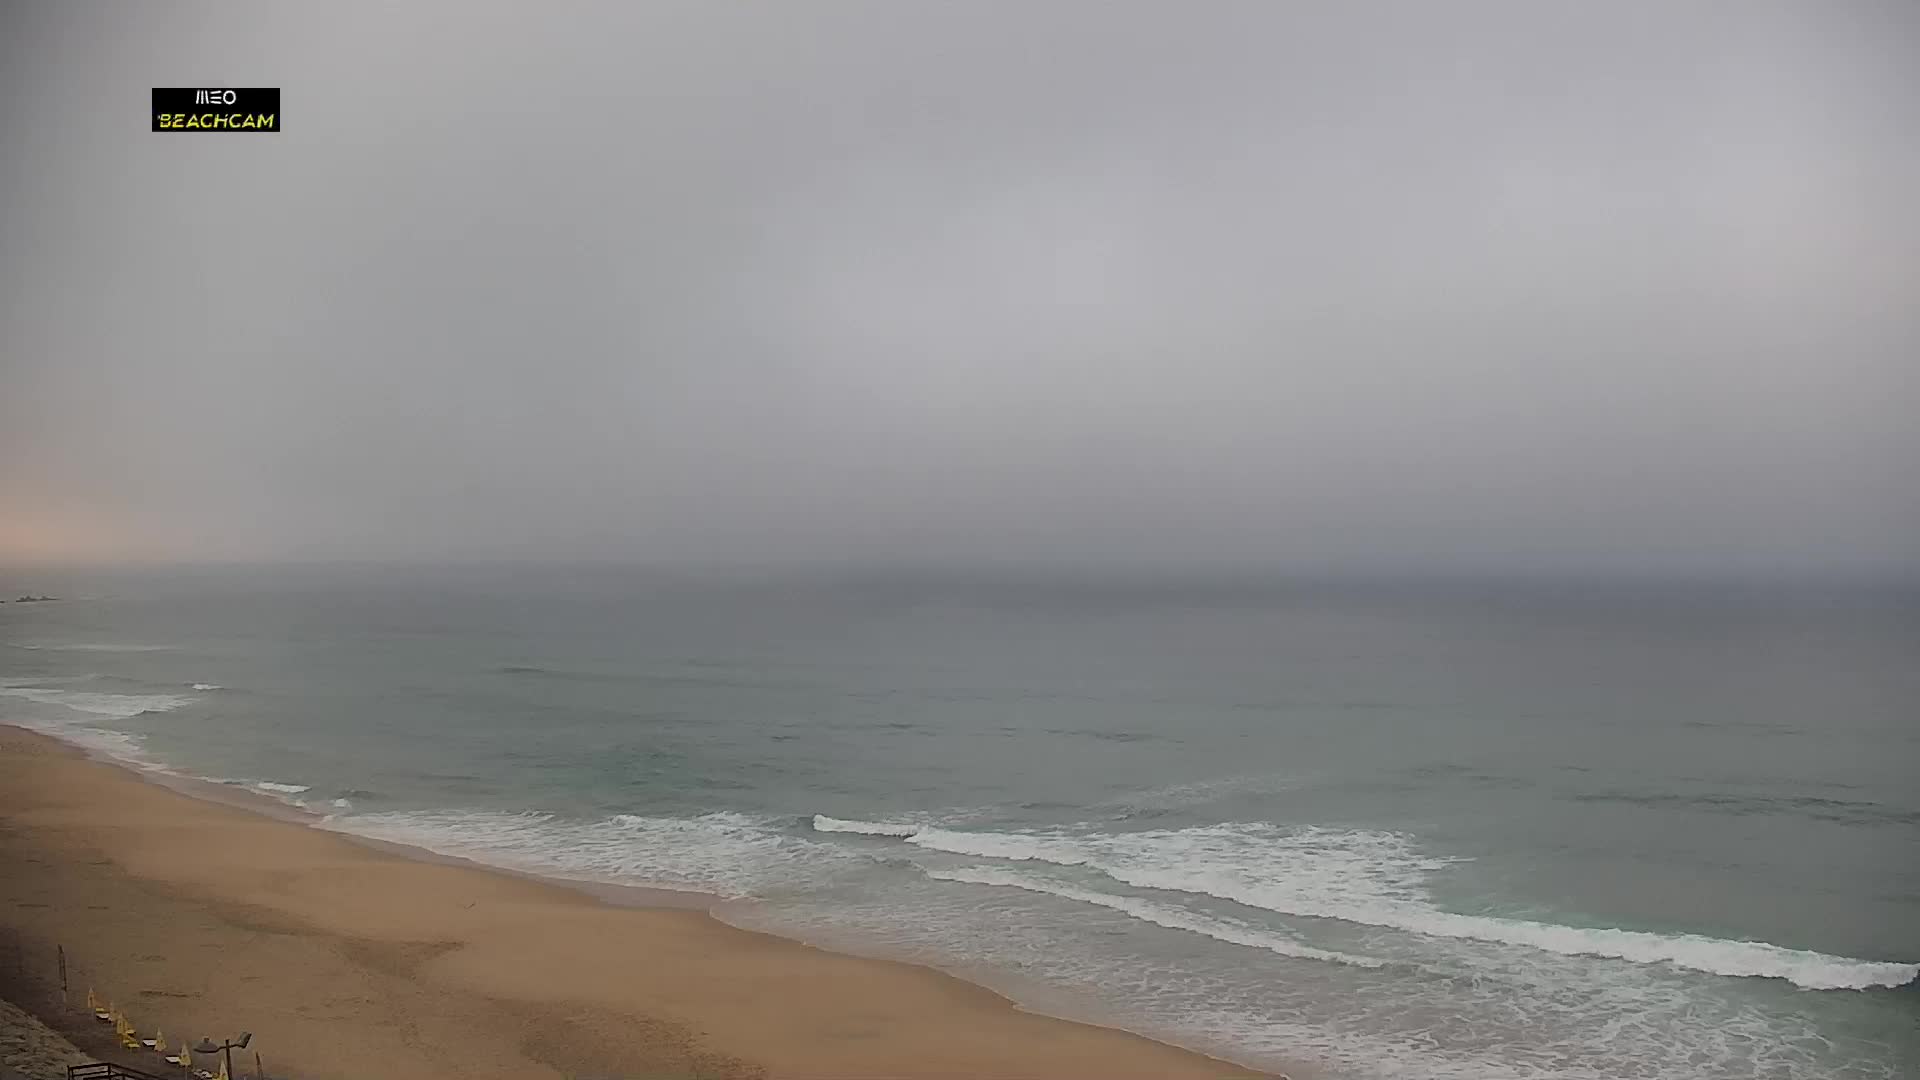 Praia Grande Di. 06:53